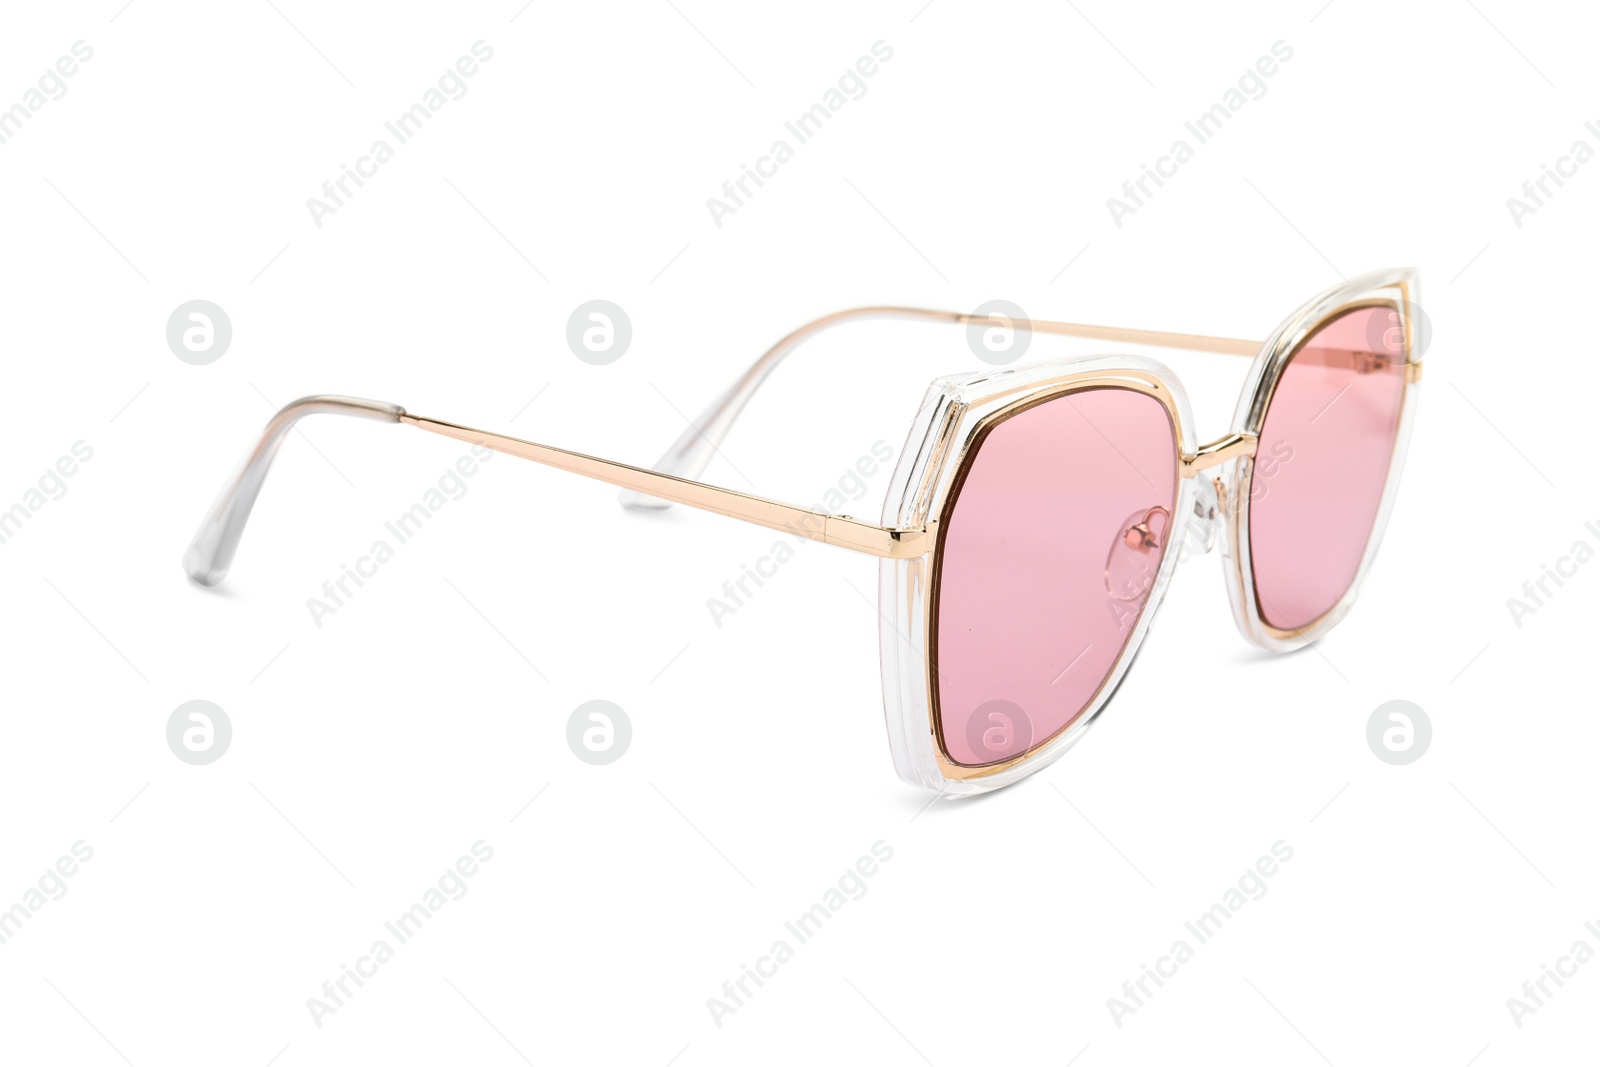 Photo of New stylish sunglasses isolated on white. Fashionable accessory